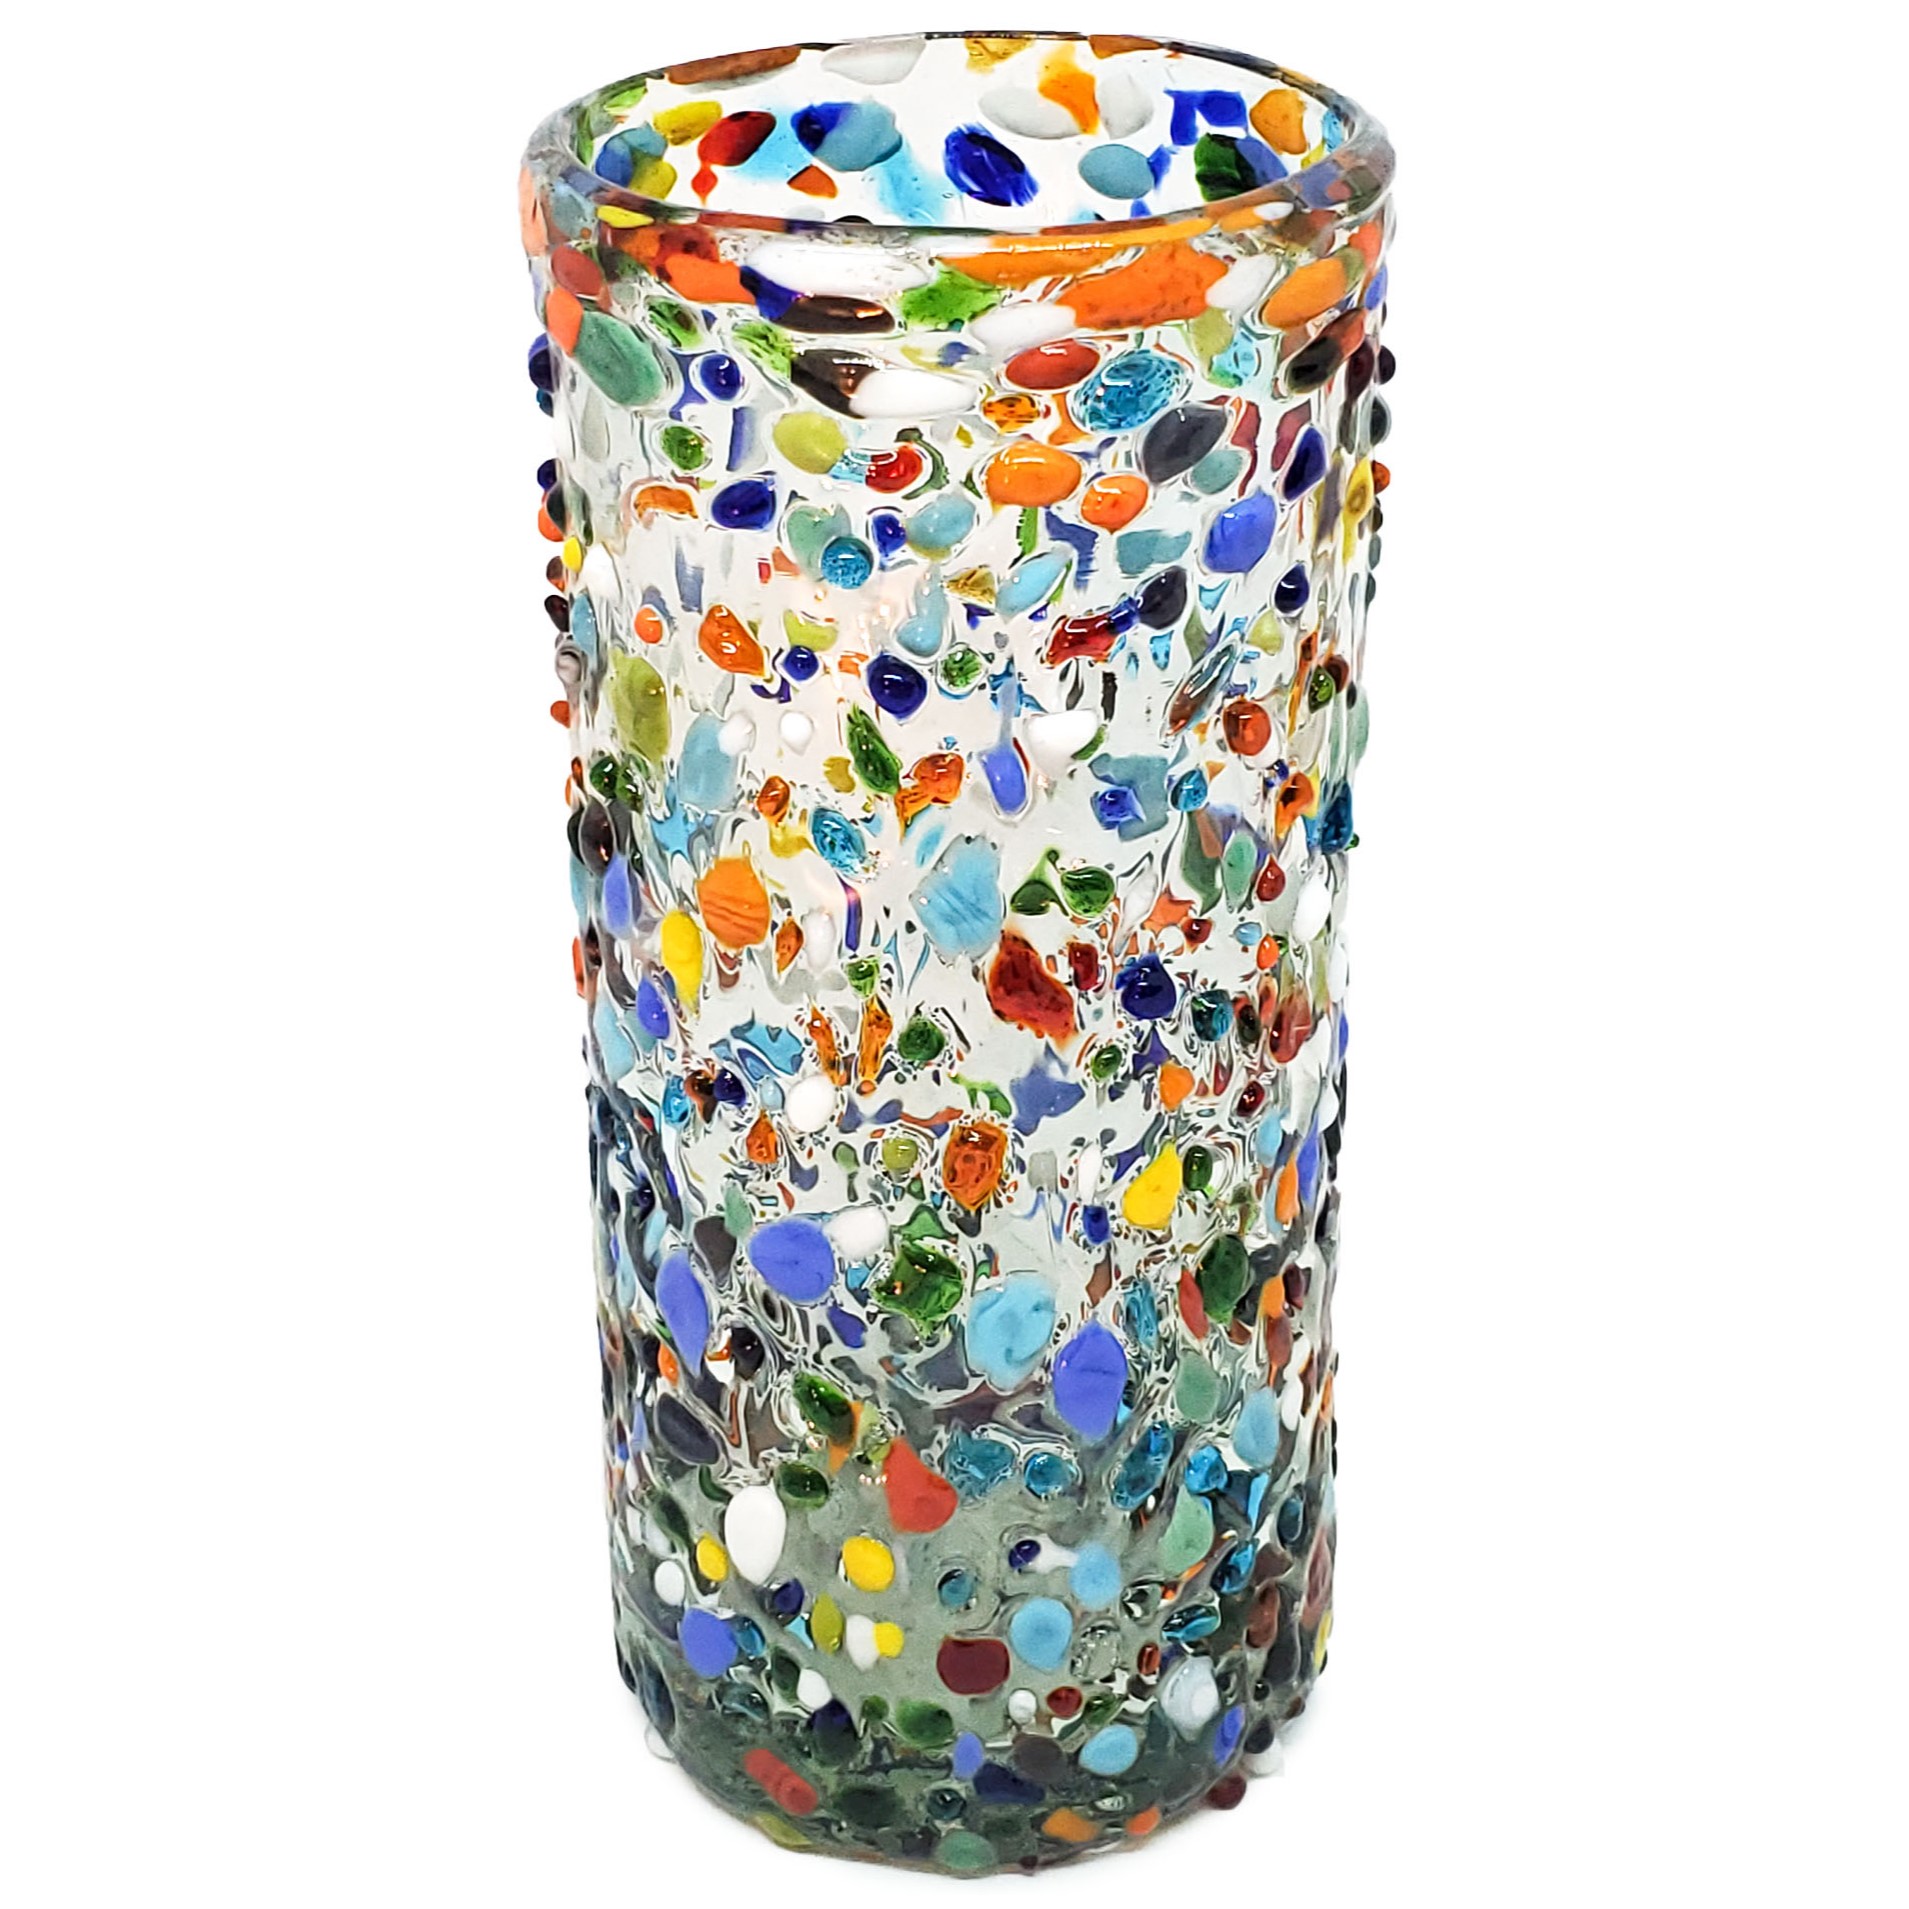 VIDRIO SOPLADO / Juego de 6 vasos Jumbo 20oz Confeti granizado, 20 oz, Vidrio Reciclado, Libre de Plomo y Toxinas